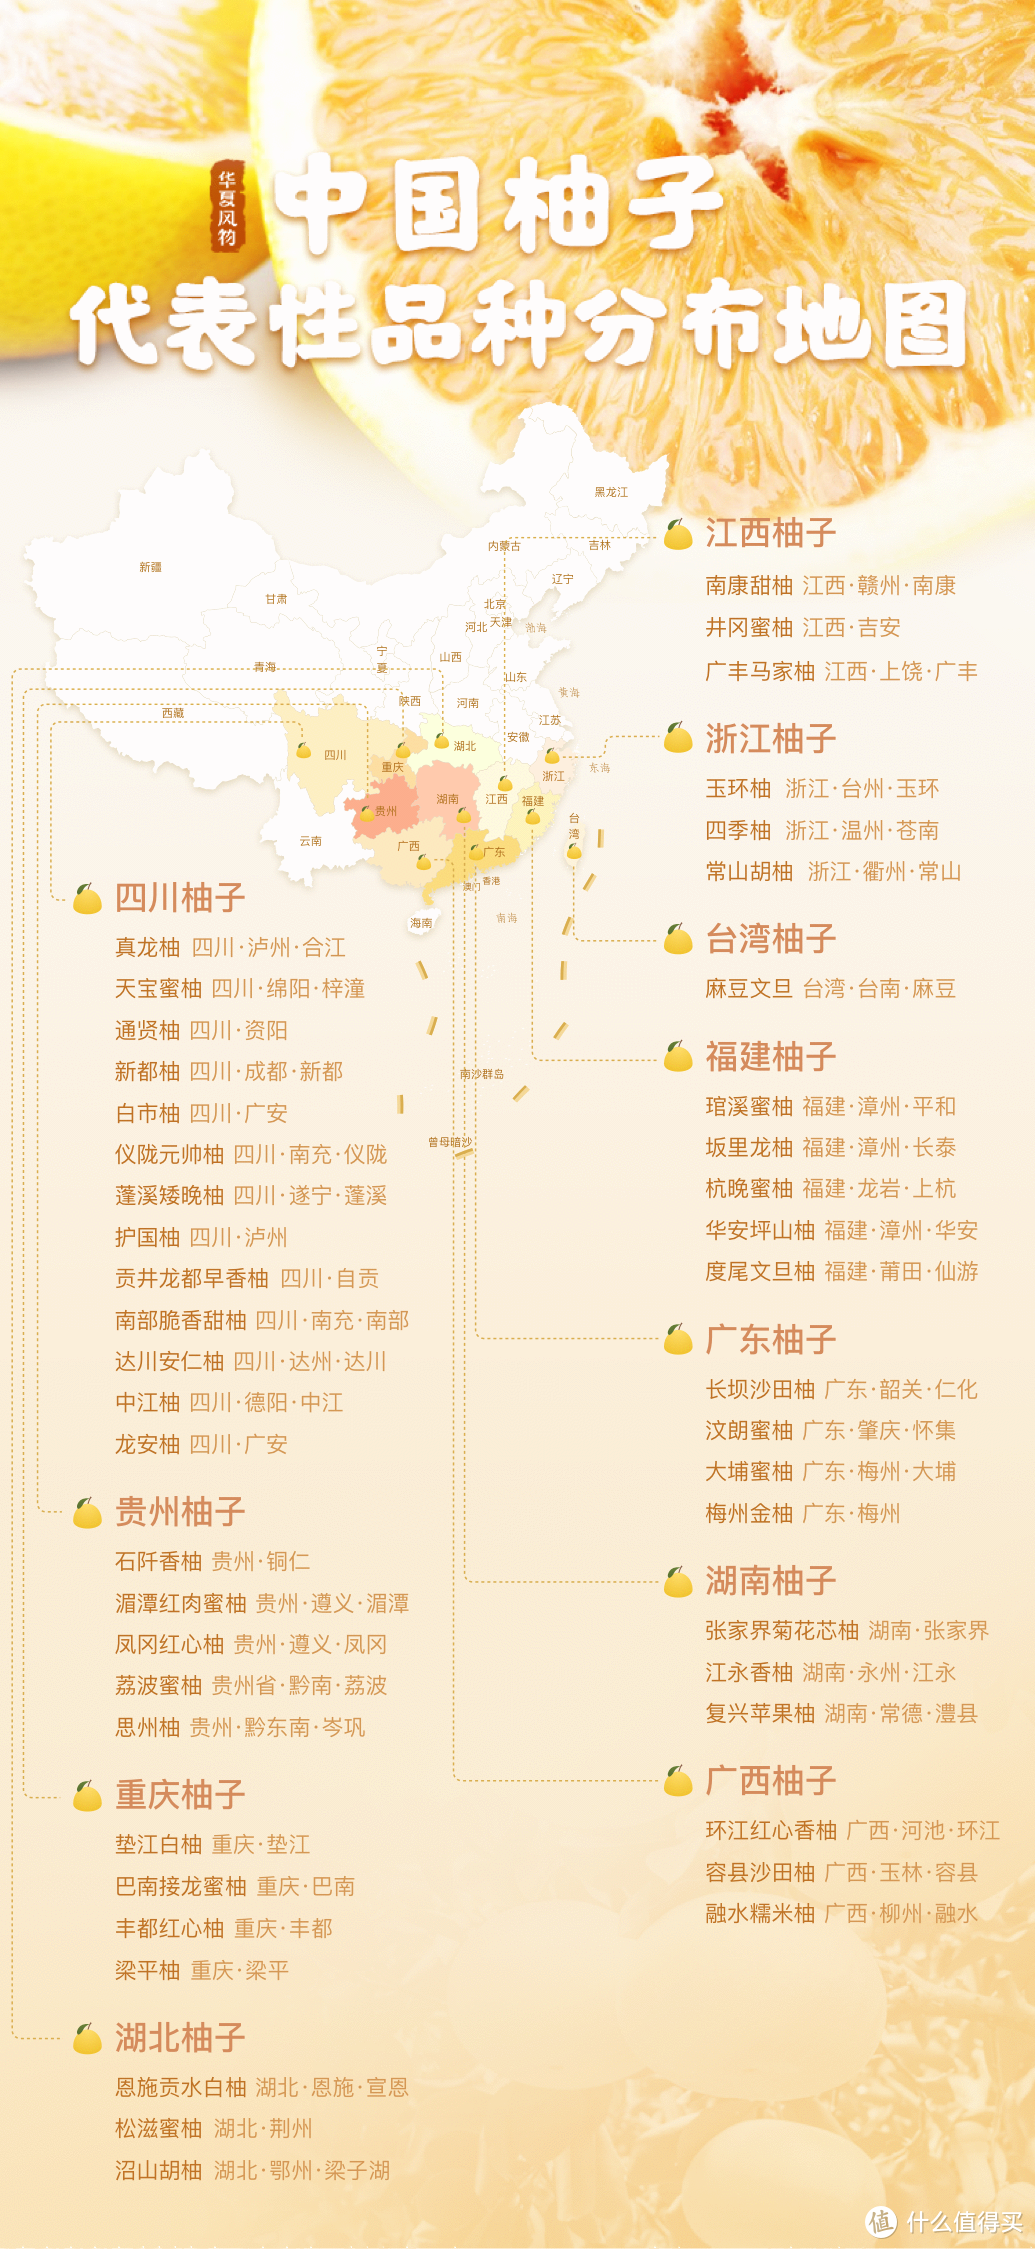 中国柚子代表性品种分布地图 ©华夏风物